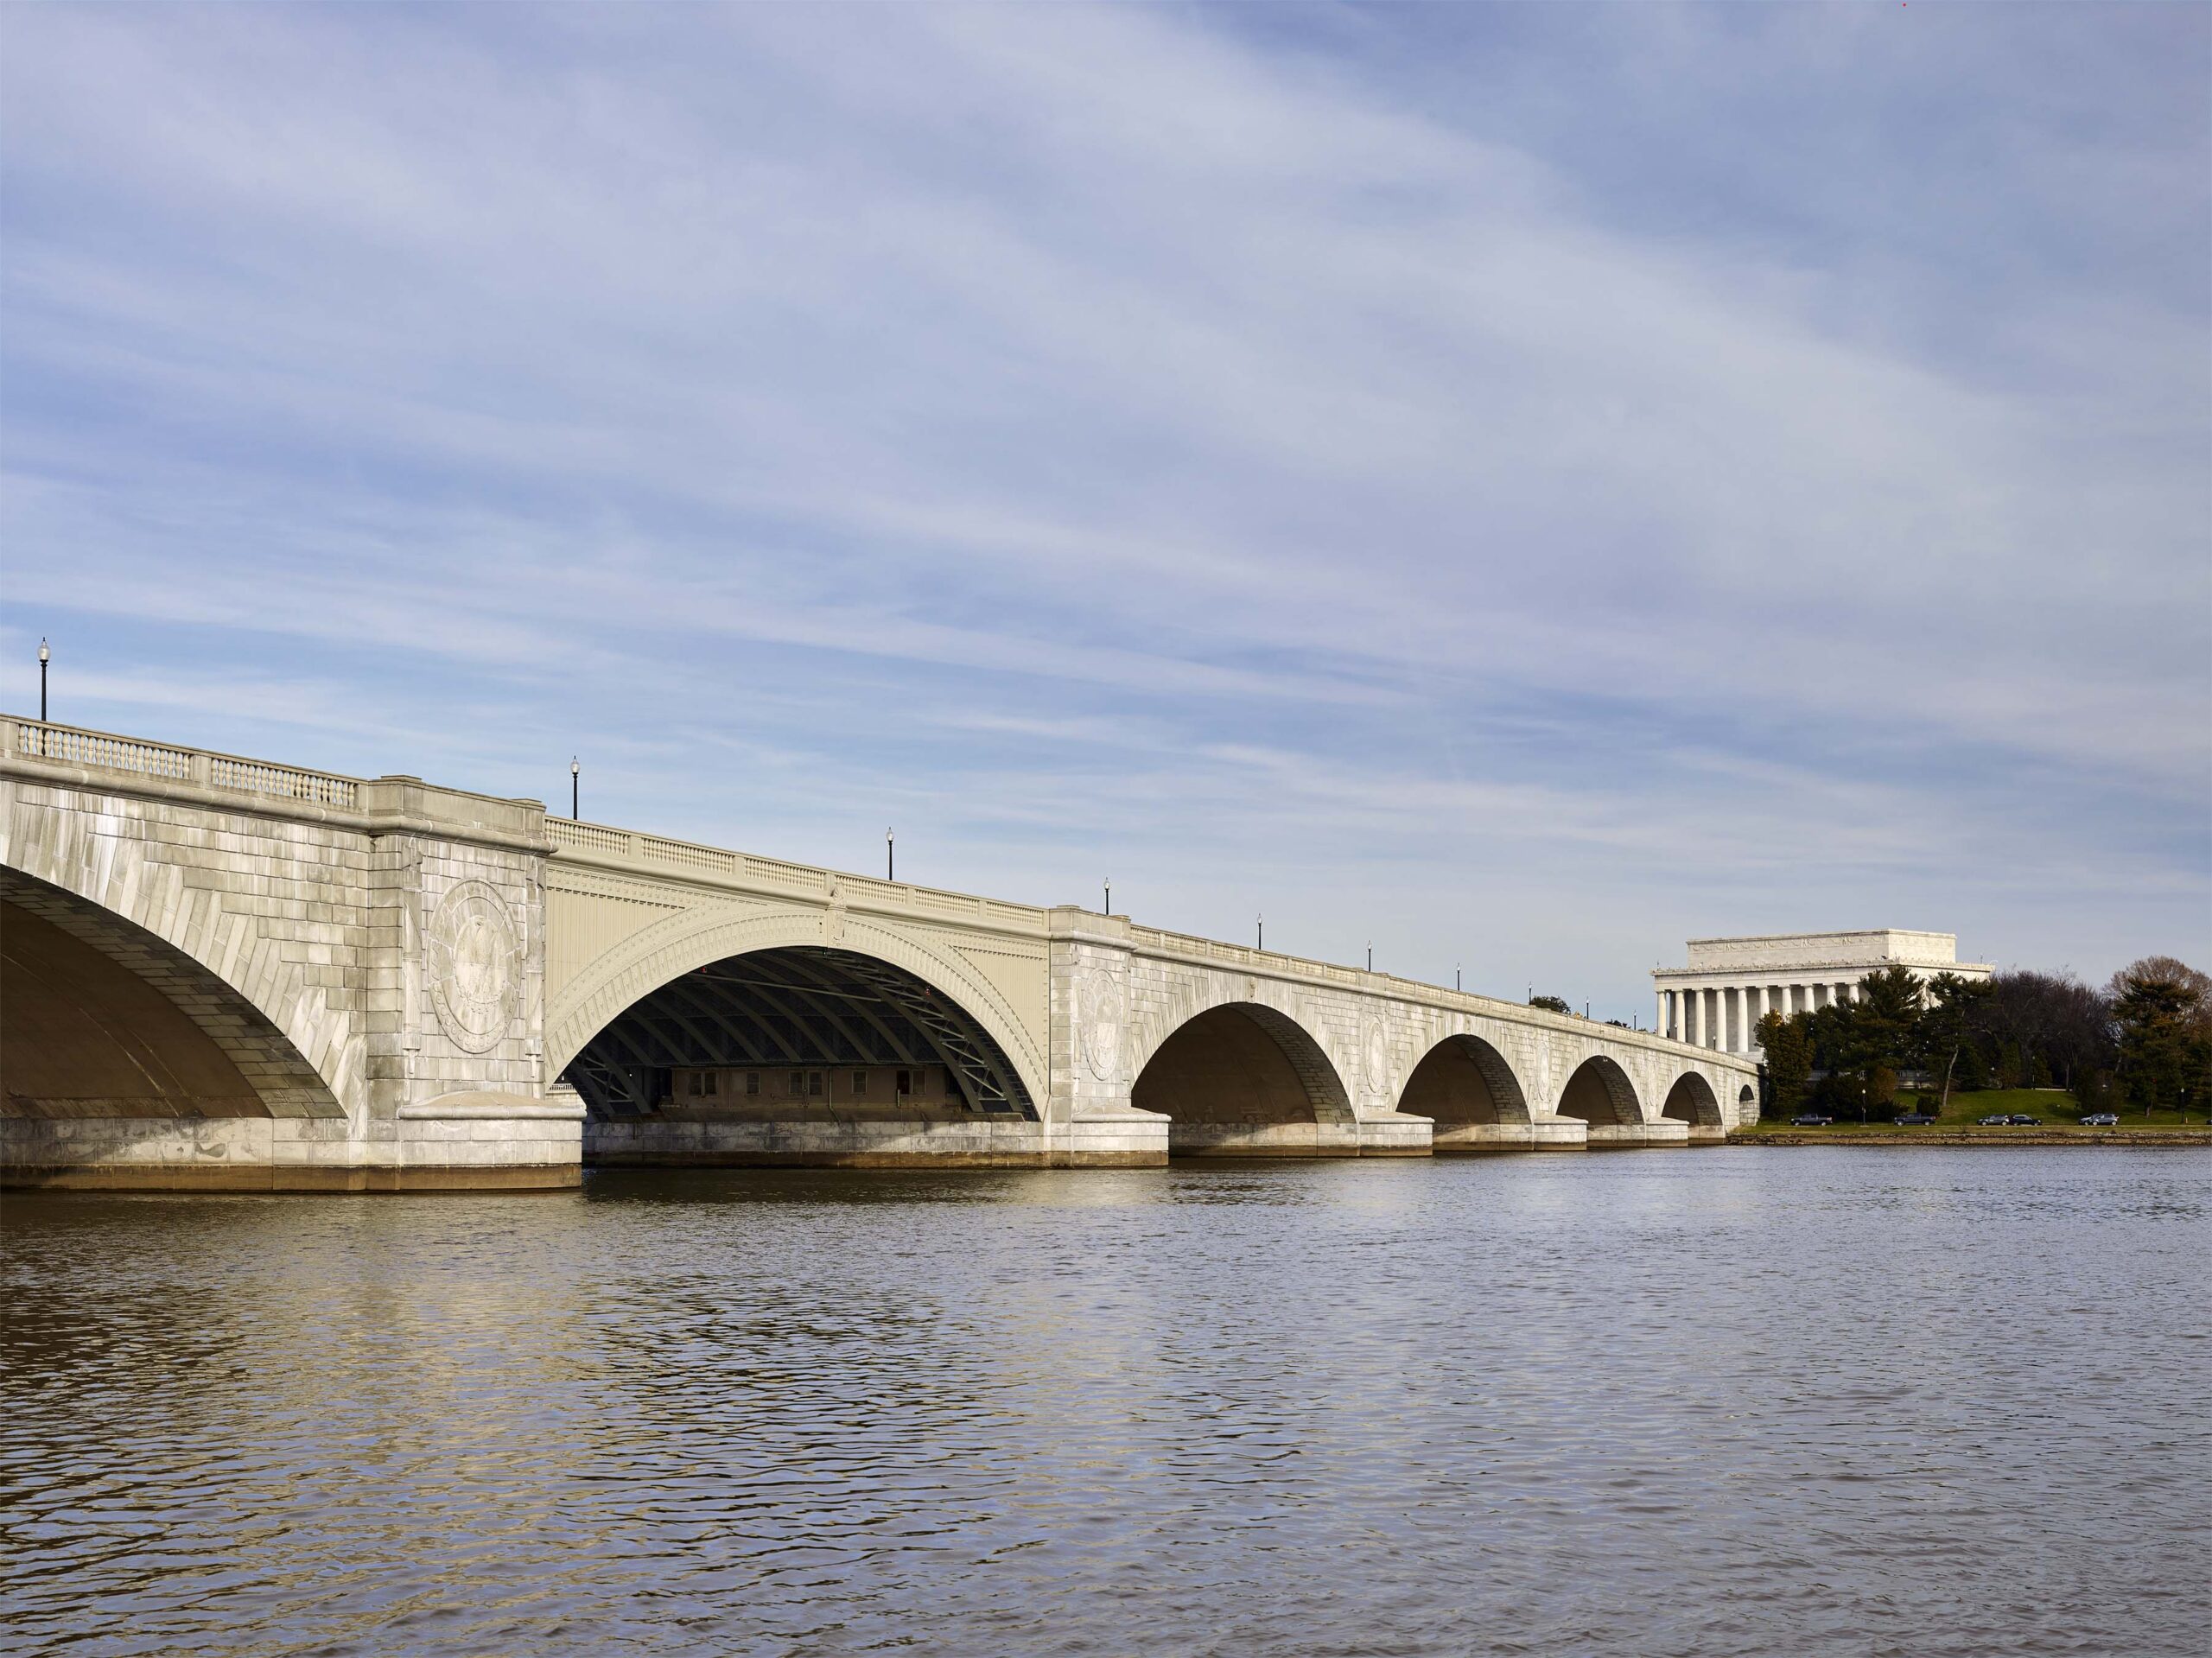 Arlington Memorial Bridge Rehabilitation